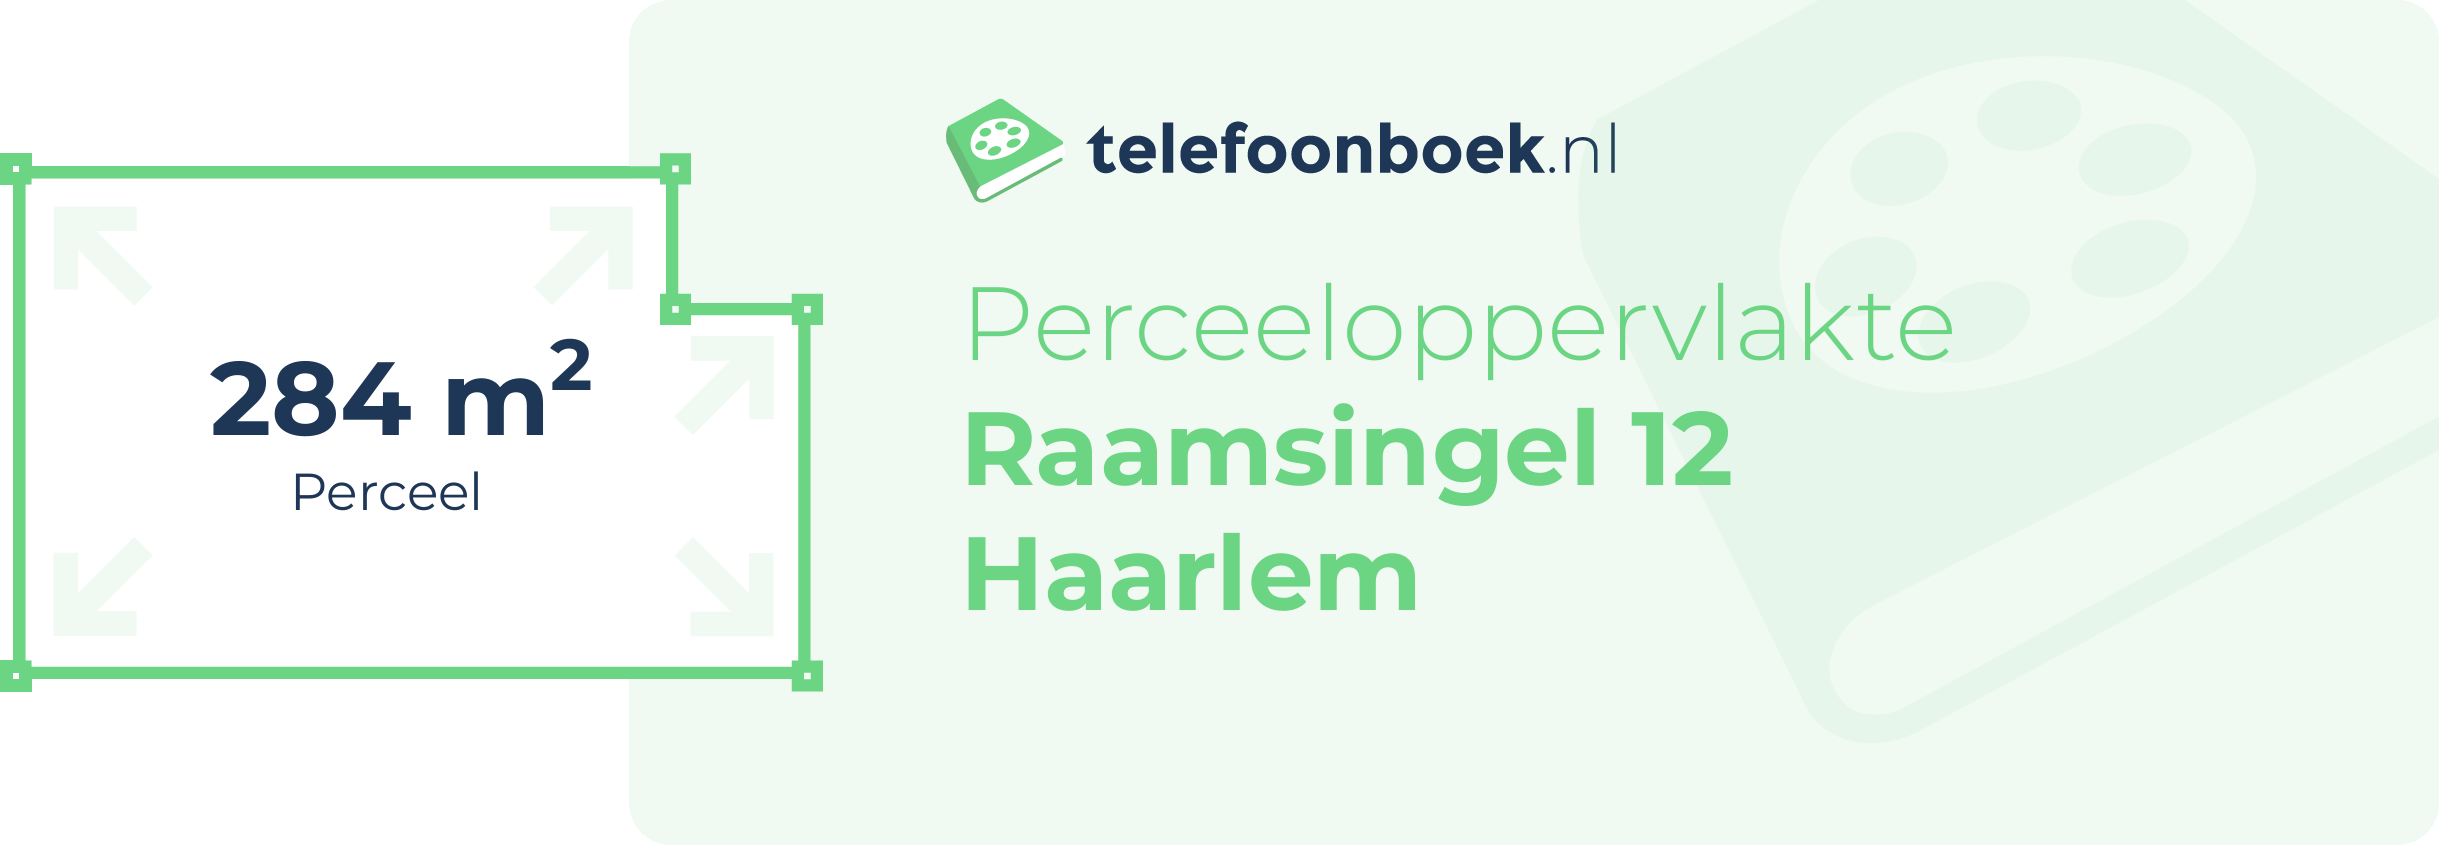 Perceeloppervlakte Raamsingel 12 Haarlem